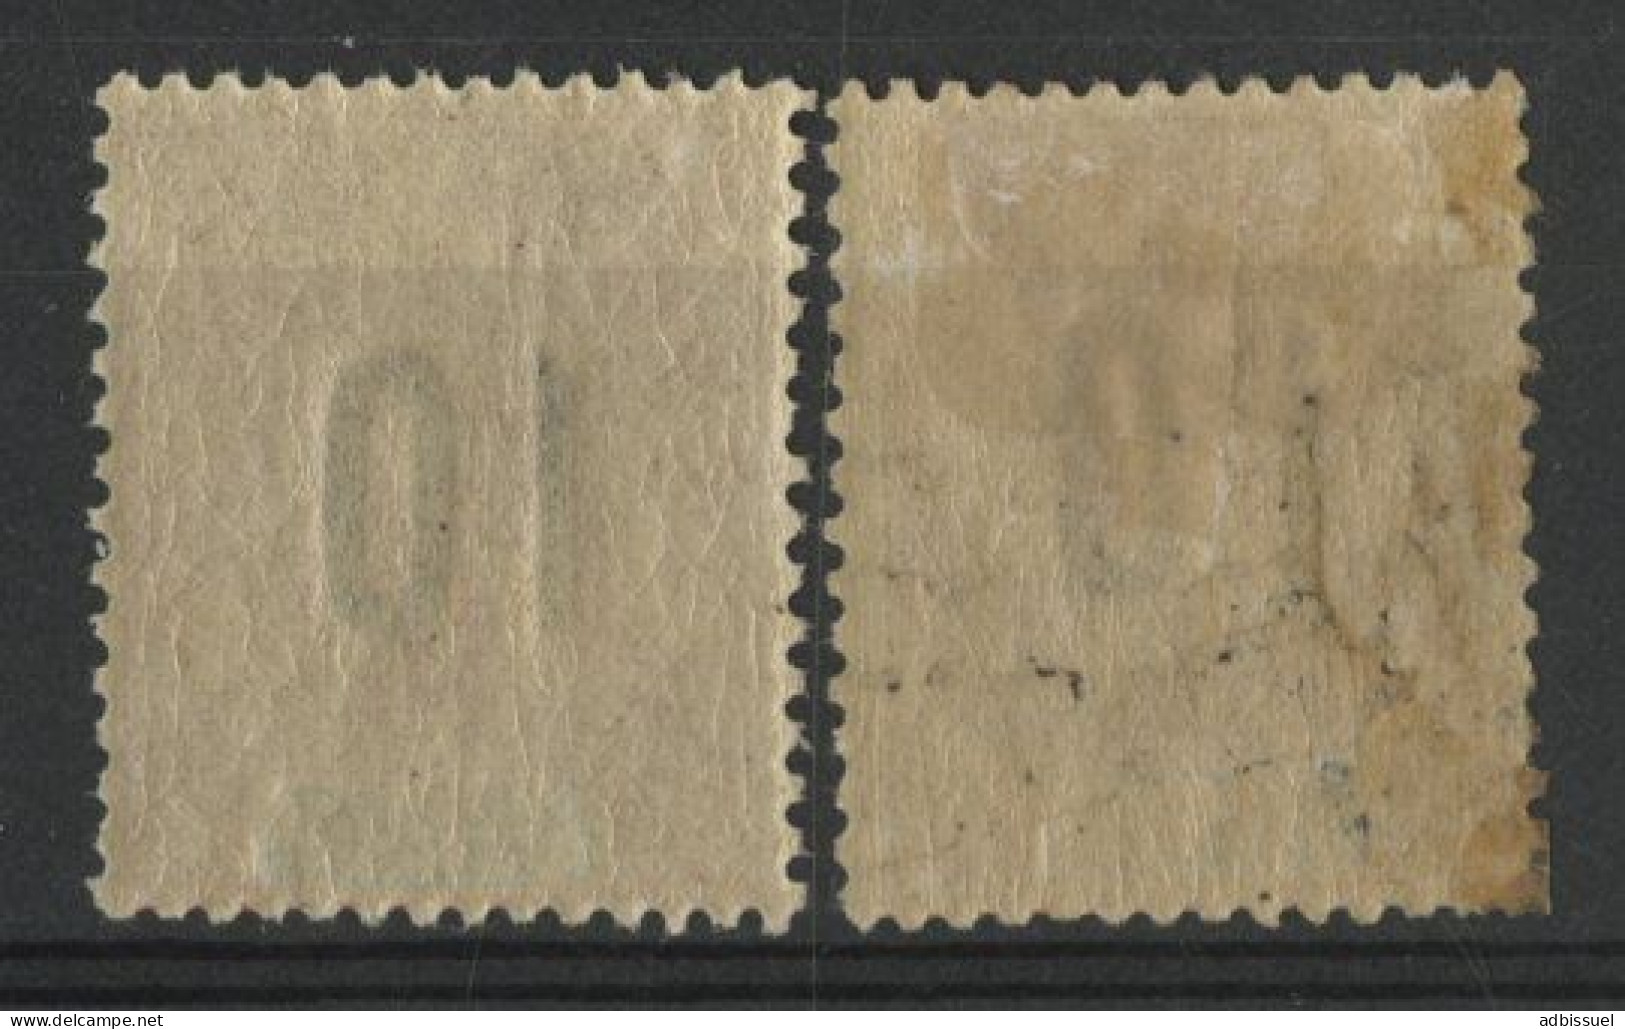 ANJOUAN N° 26 + 26A Neufs * (MH) Espacé + Normal Voir Description - Unused Stamps